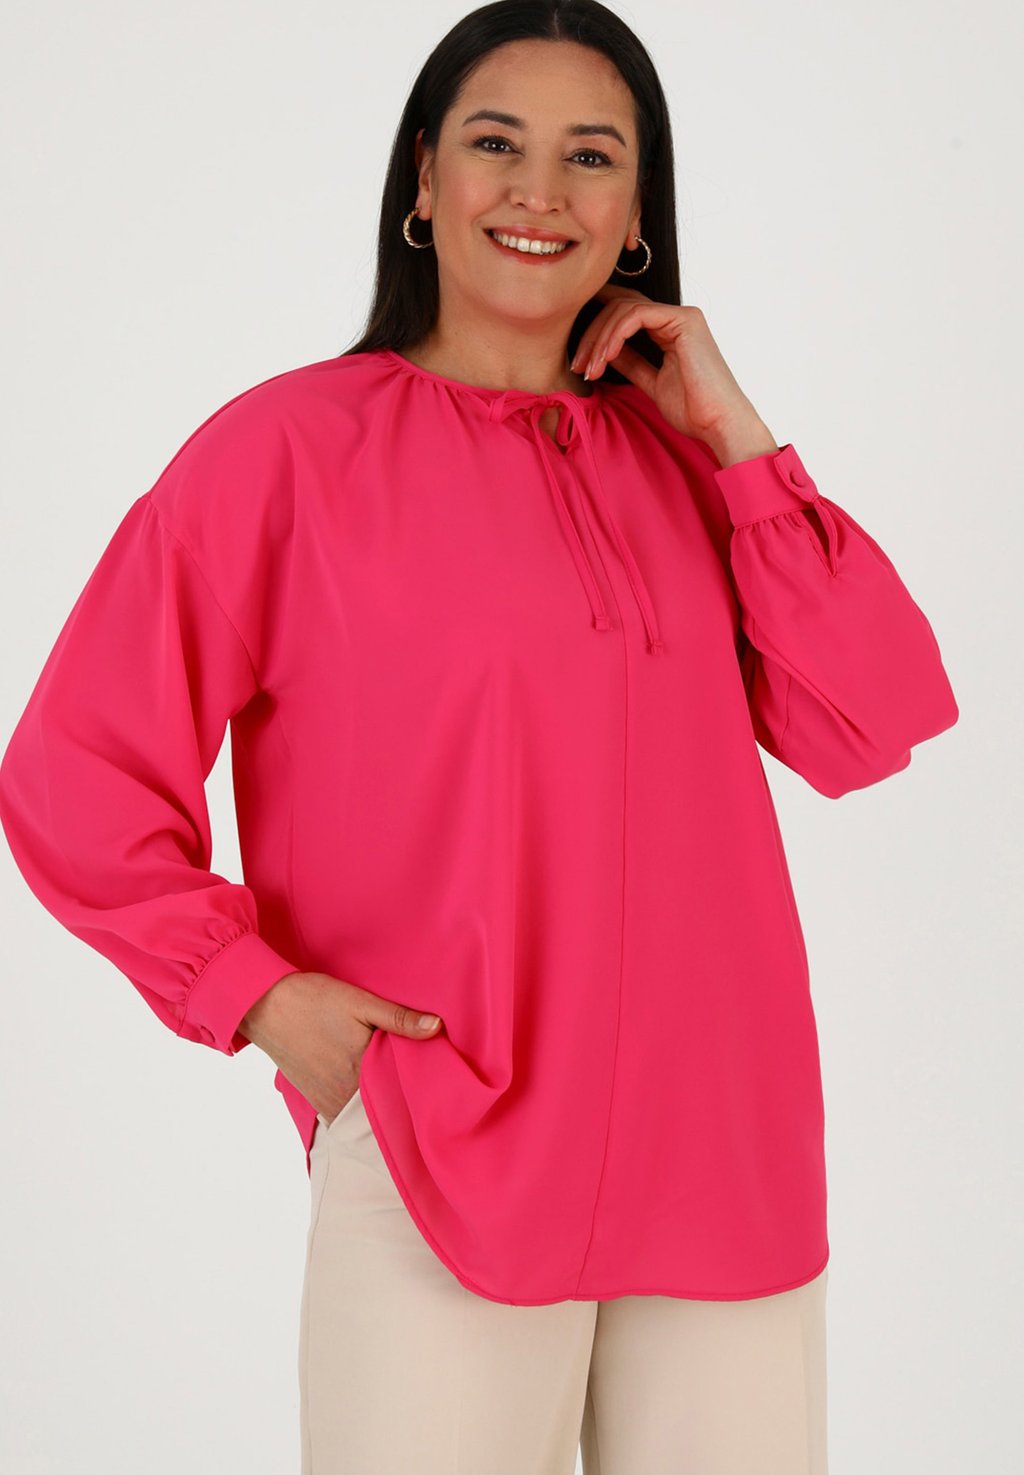 Блузка CREW NECK PLUS SIZE ALIA Modanisa, розовый hanezza plus size crew neck zipper blouse